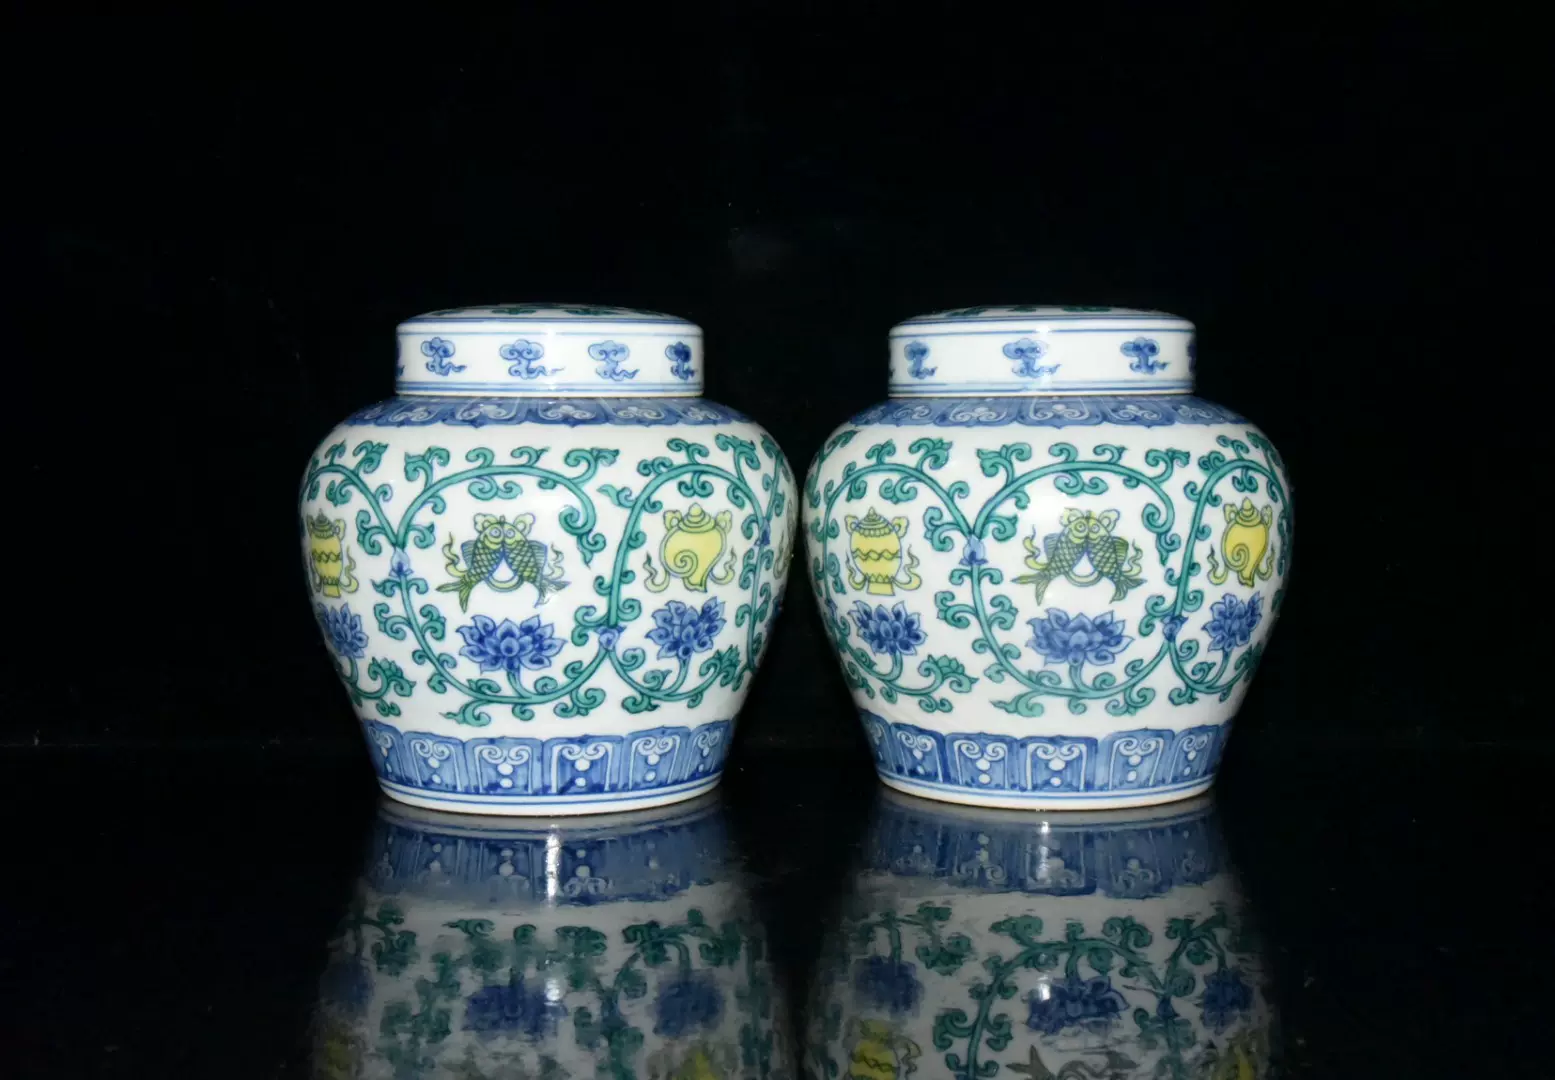 明代成化斗彩缠枝八宝纹天字罐一对古董古玩老货保真老瓷器收藏-Taobao